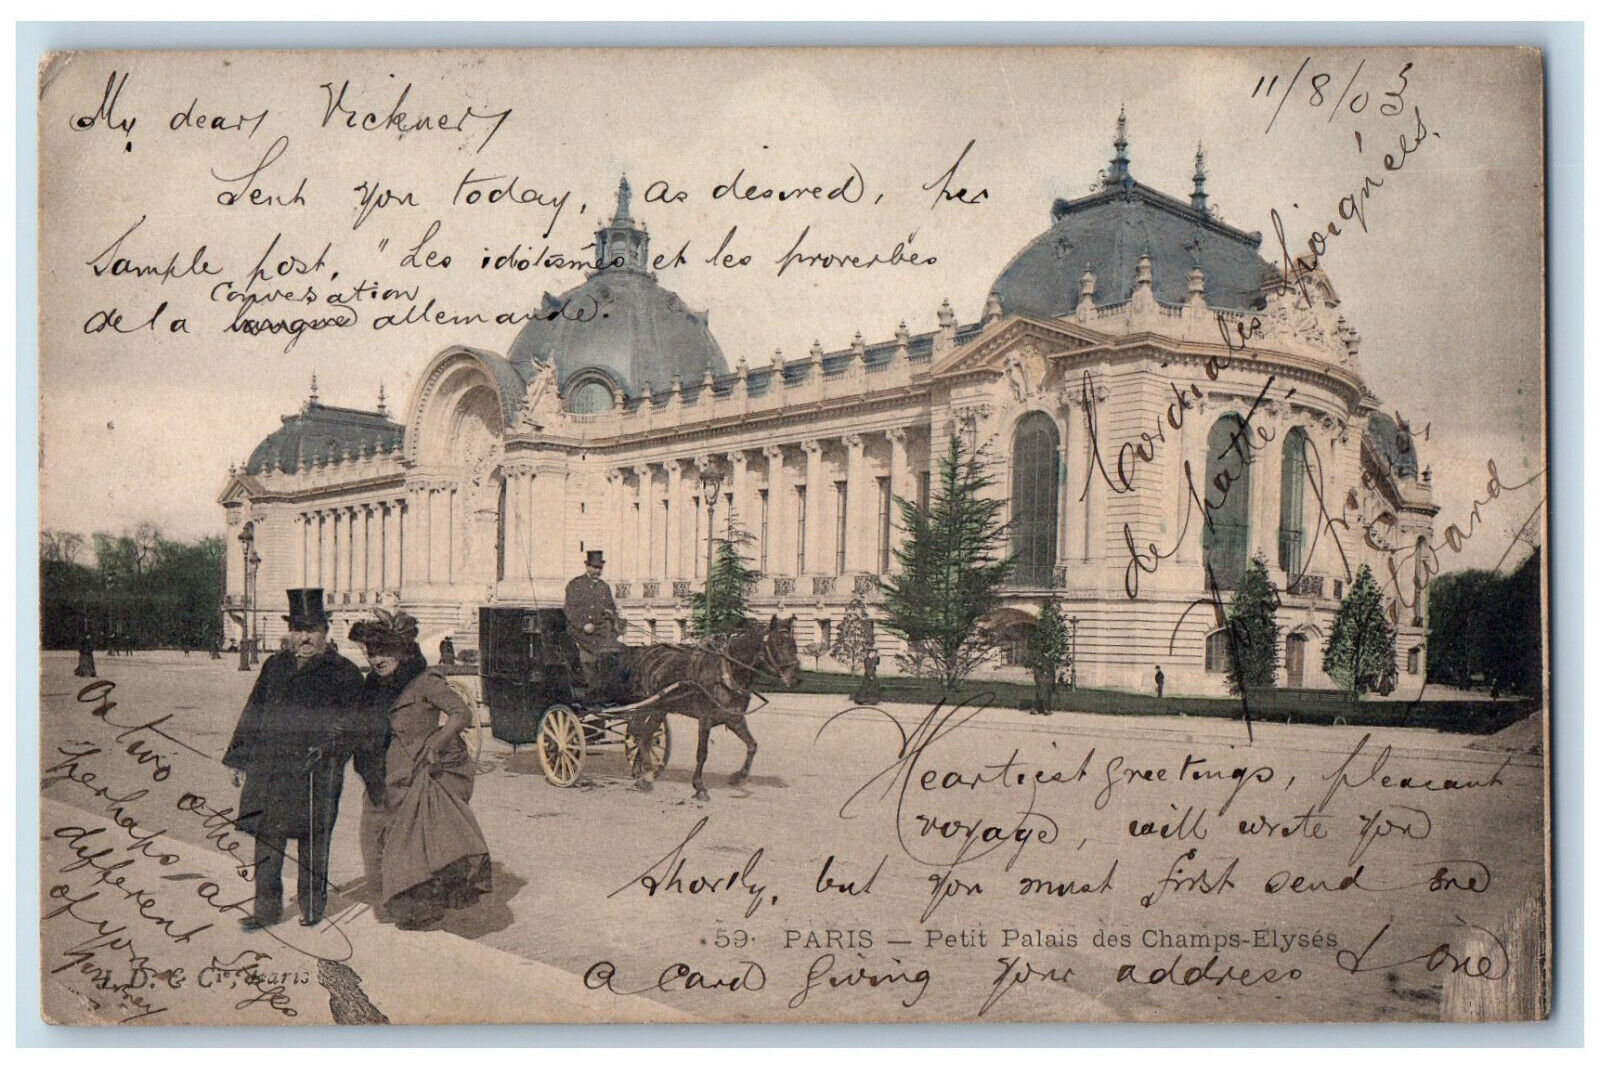 Paris France Postcard Petit Grand Palais des Champs-Élysées 1903 Antique